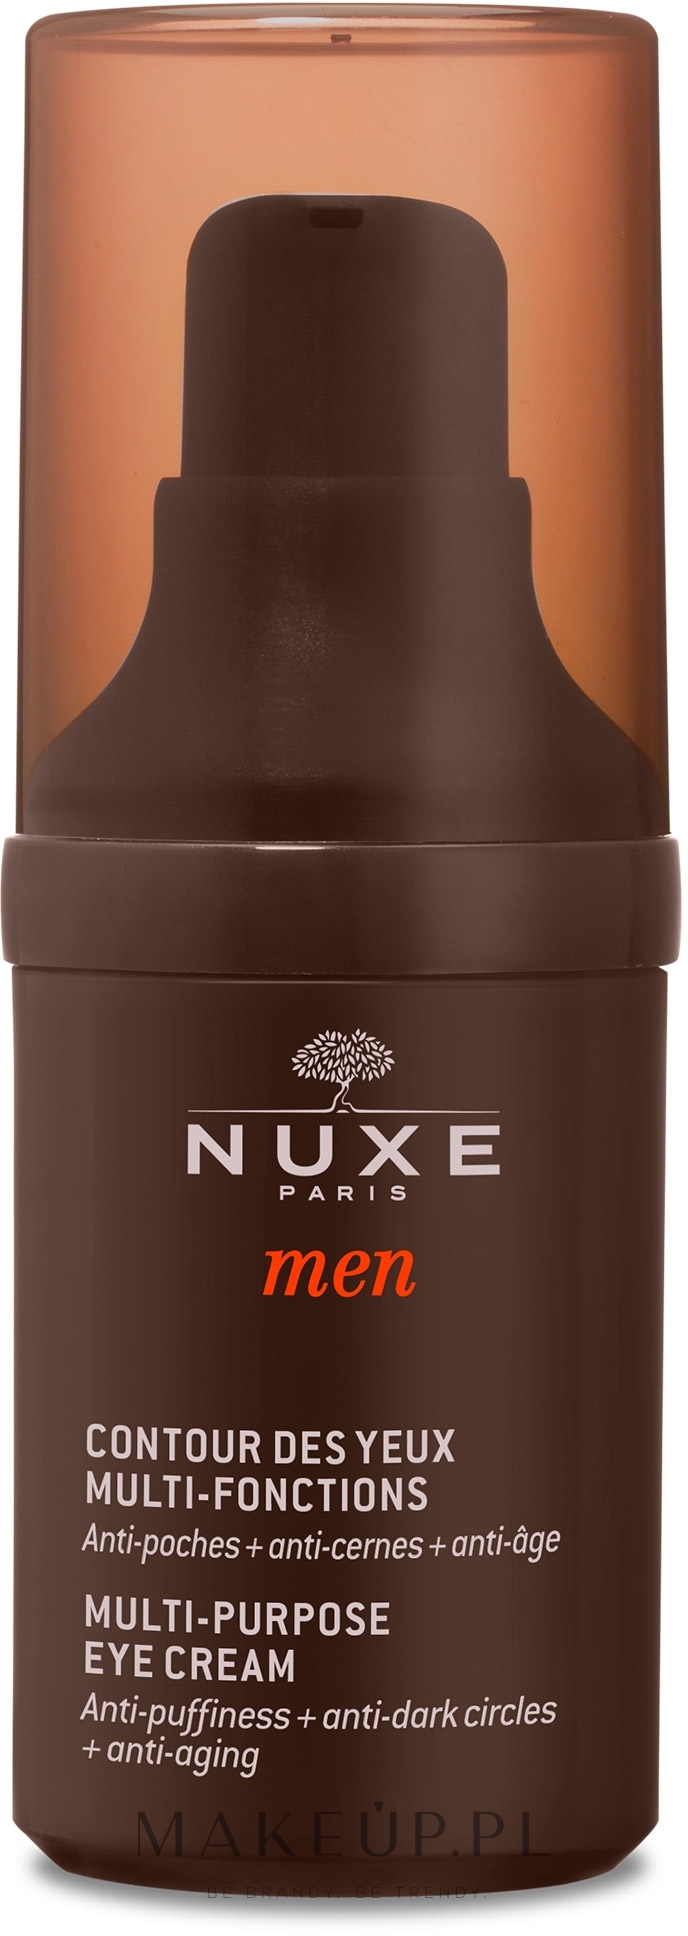 PRZECENA! Wielofunkcyjny krem pod oczy dla mężczyzn - Nuxe Men Multi-Purpose Eye Cream * — Zdjęcie 15 ml